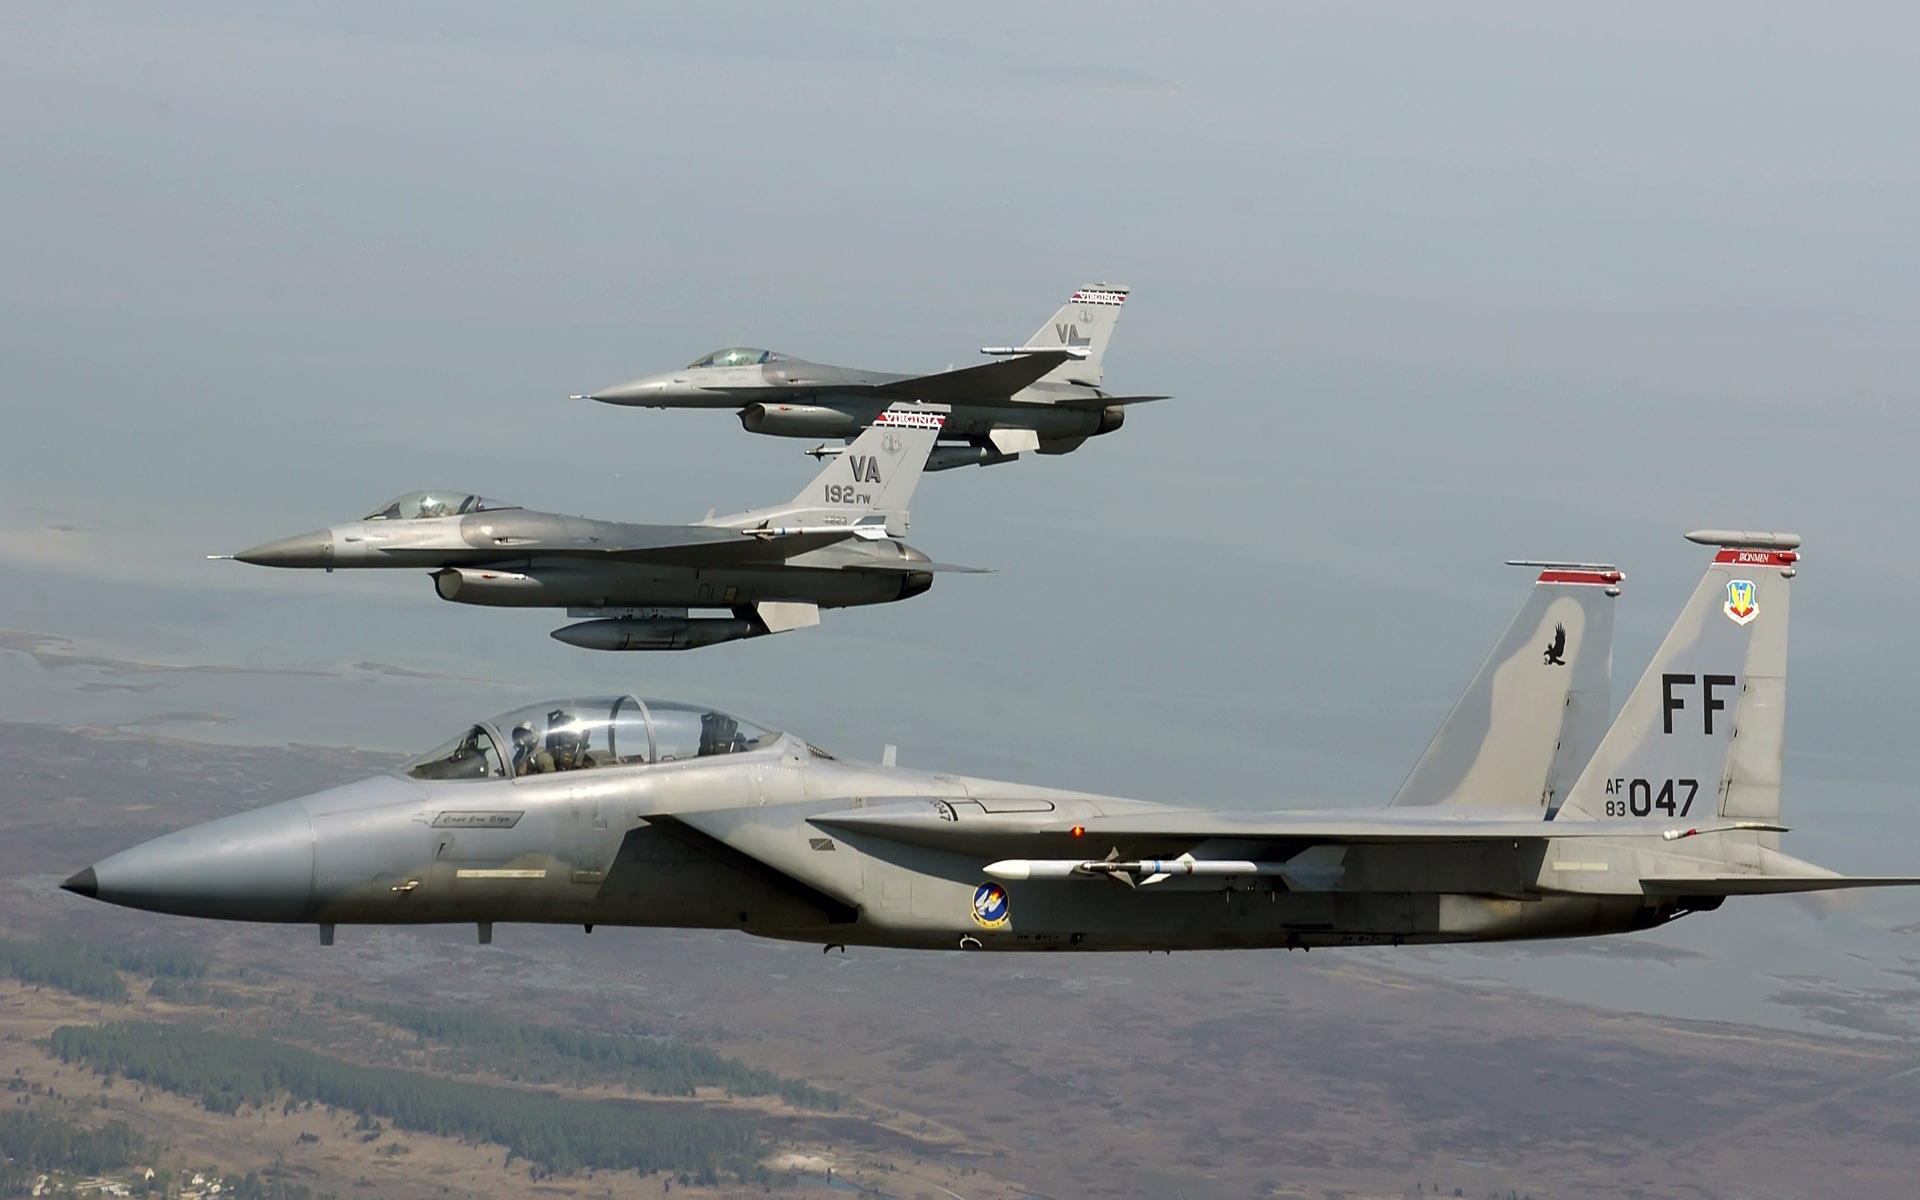 Боевые соколы F15 и F16